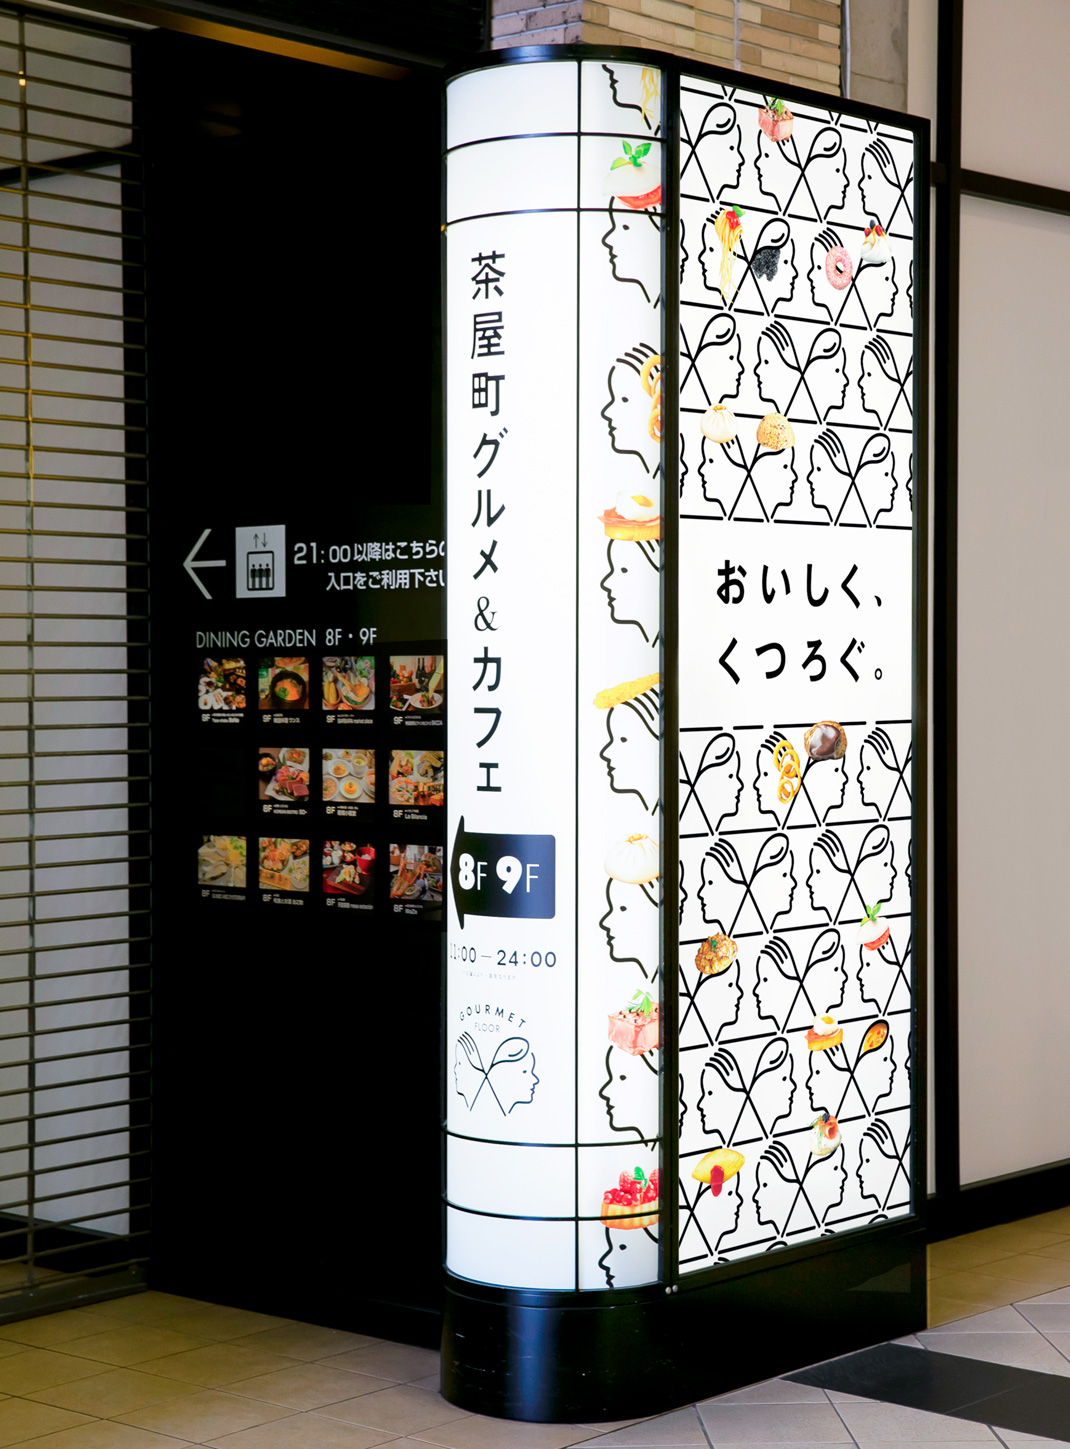 自然发生茶屋町 日本 插图设计 人物插画 广告设计 logo设计 vi设计 空间设计